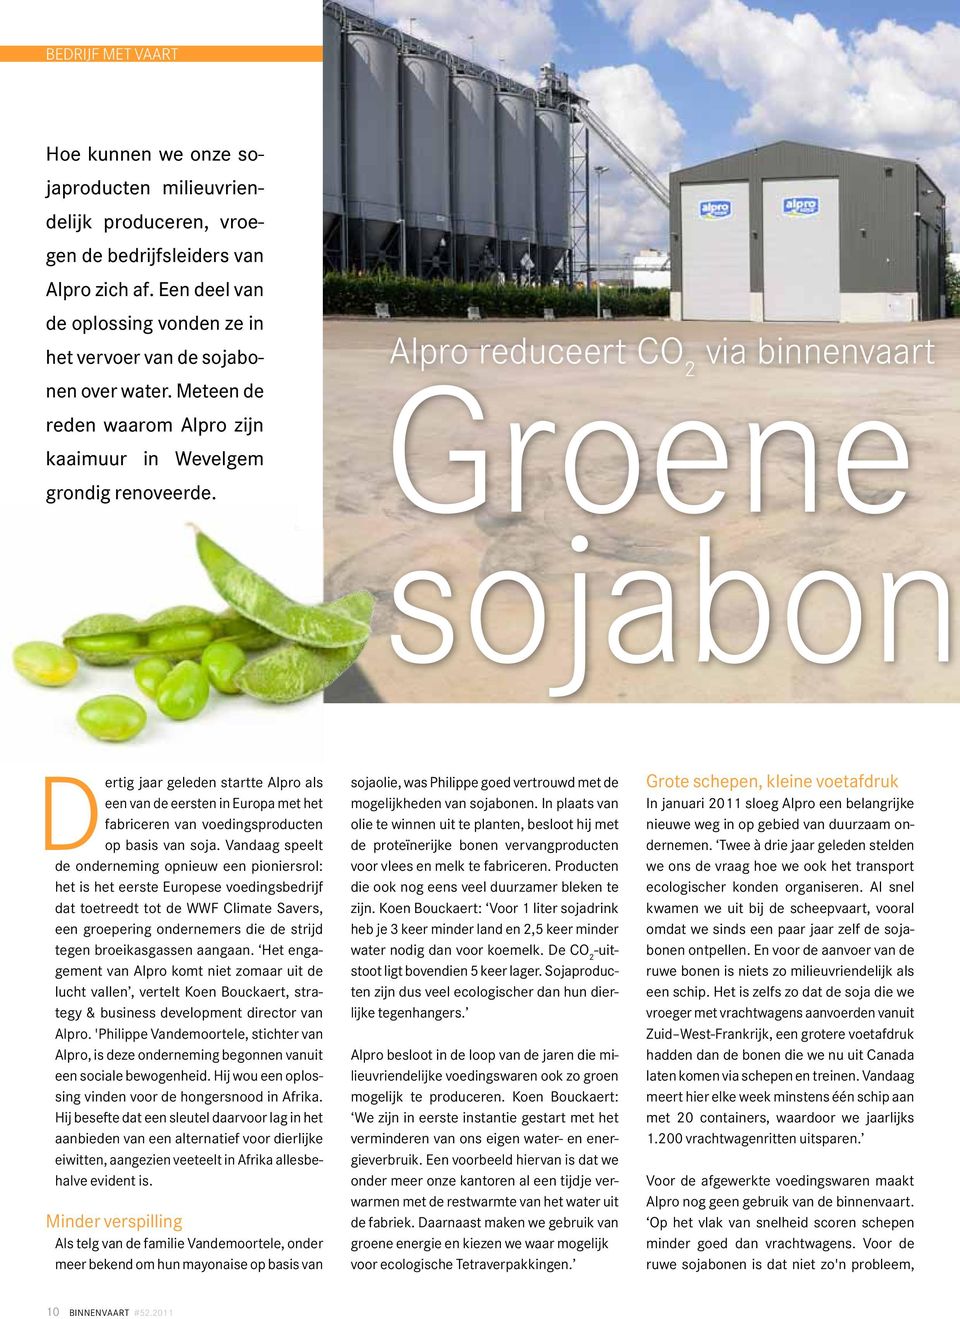 Alpro reduceert CO 2 via binnenvaart Groene sojabon Dertig jaar geleden startte Alpro als een van de eersten in Europa met het fabriceren van voedingsproducten op basis van soja.